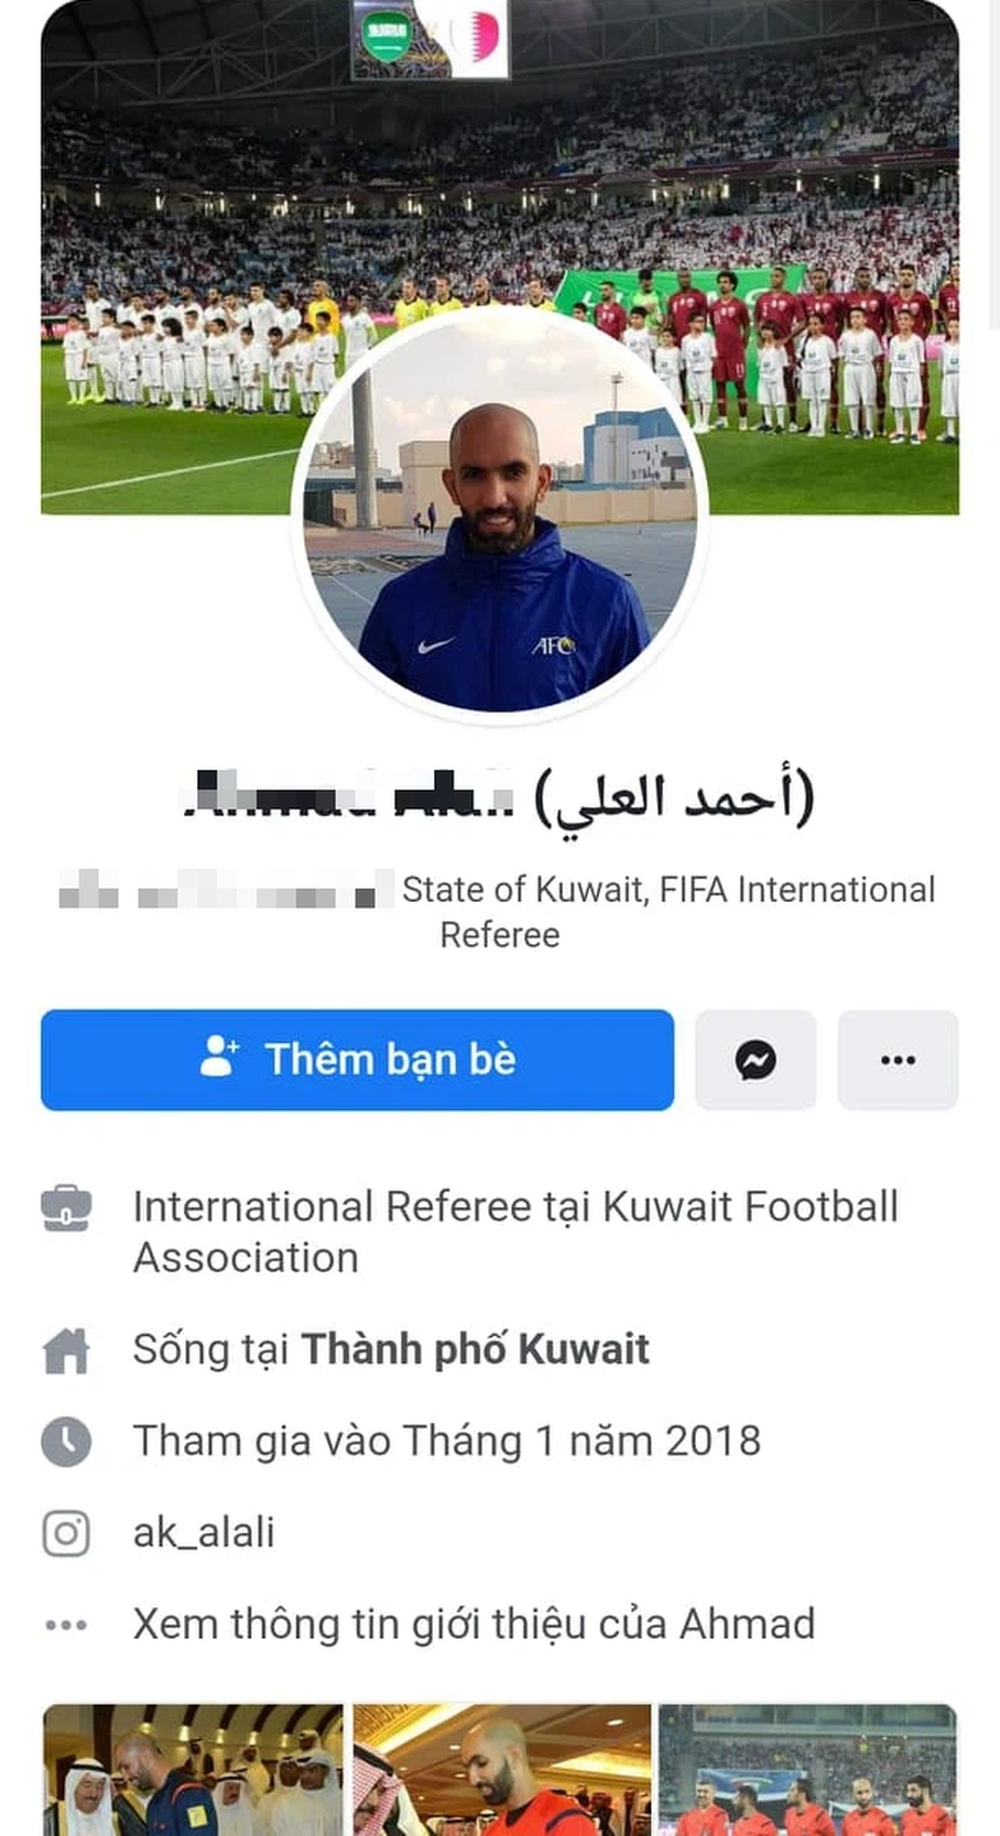 Không có chuyện trọng tài Ahmad Alali khoá Facebook do bị cổ động viên Việt Nam tấn công - Ảnh 3.